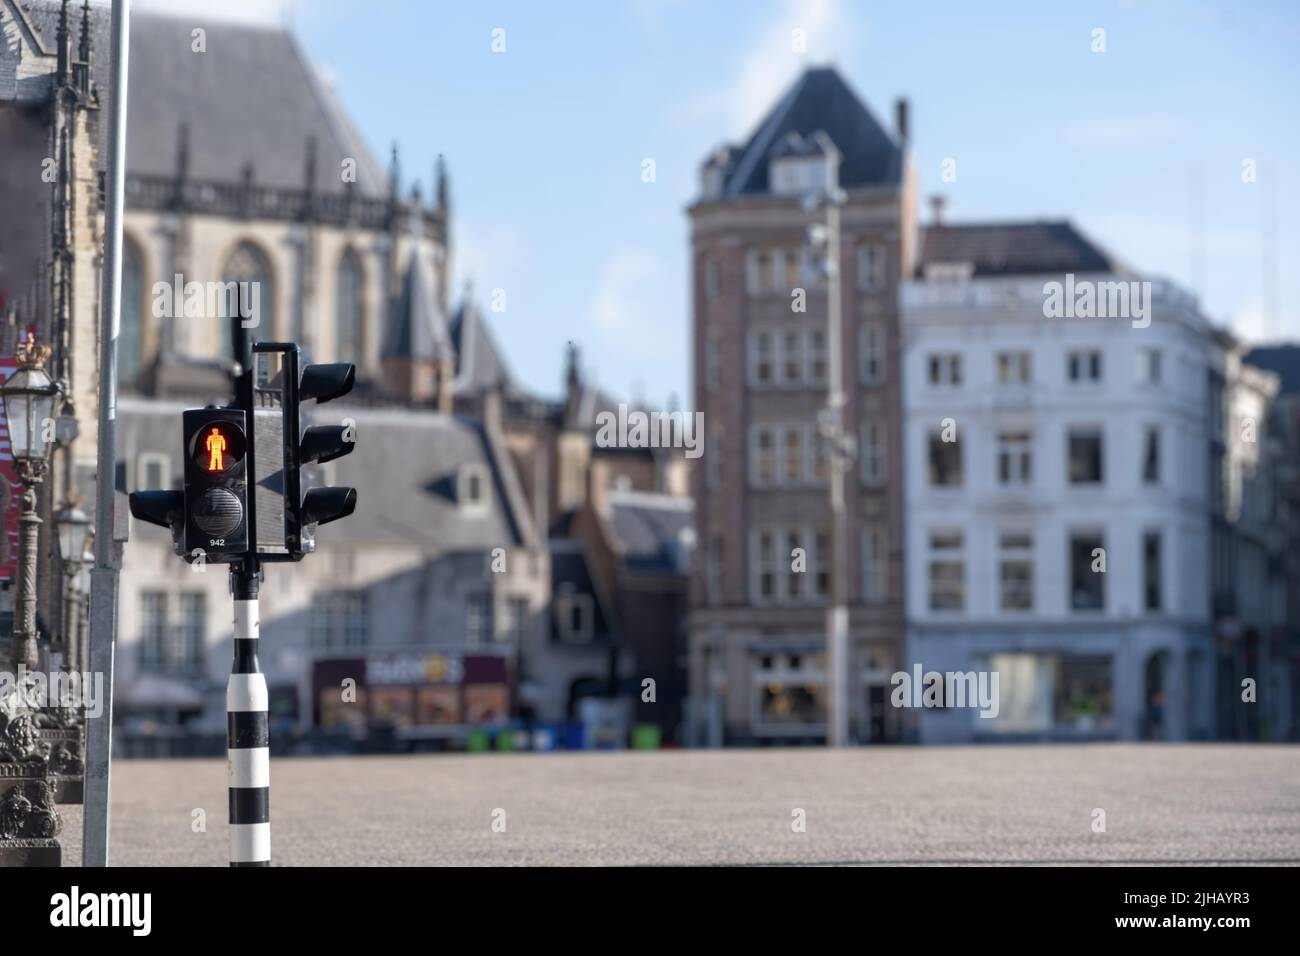 Semáforos rojos para peatones en la ciudad de Ámsterdam, difuminan el icónico fondo de la casa. Semáforo, señal de advertencia en el cruce peatonal, Holanda, Países Bajos. Foto de stock